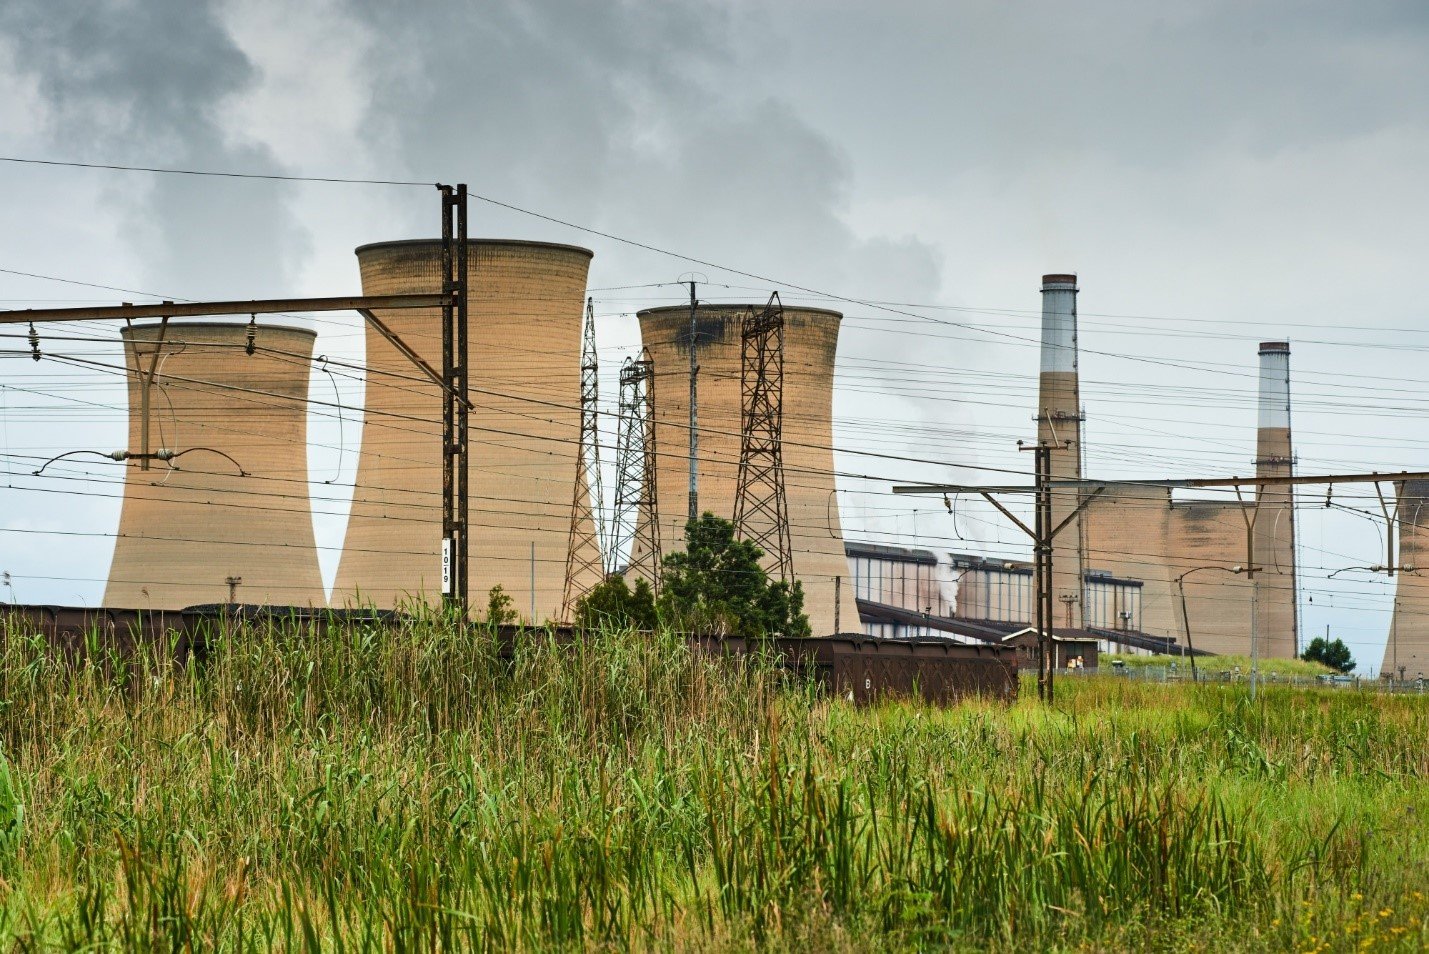 محطة هيندرينا لتوليد الكهرباء من الفحم في بلدة ميدلبورغ بجنوب أفريقيا 